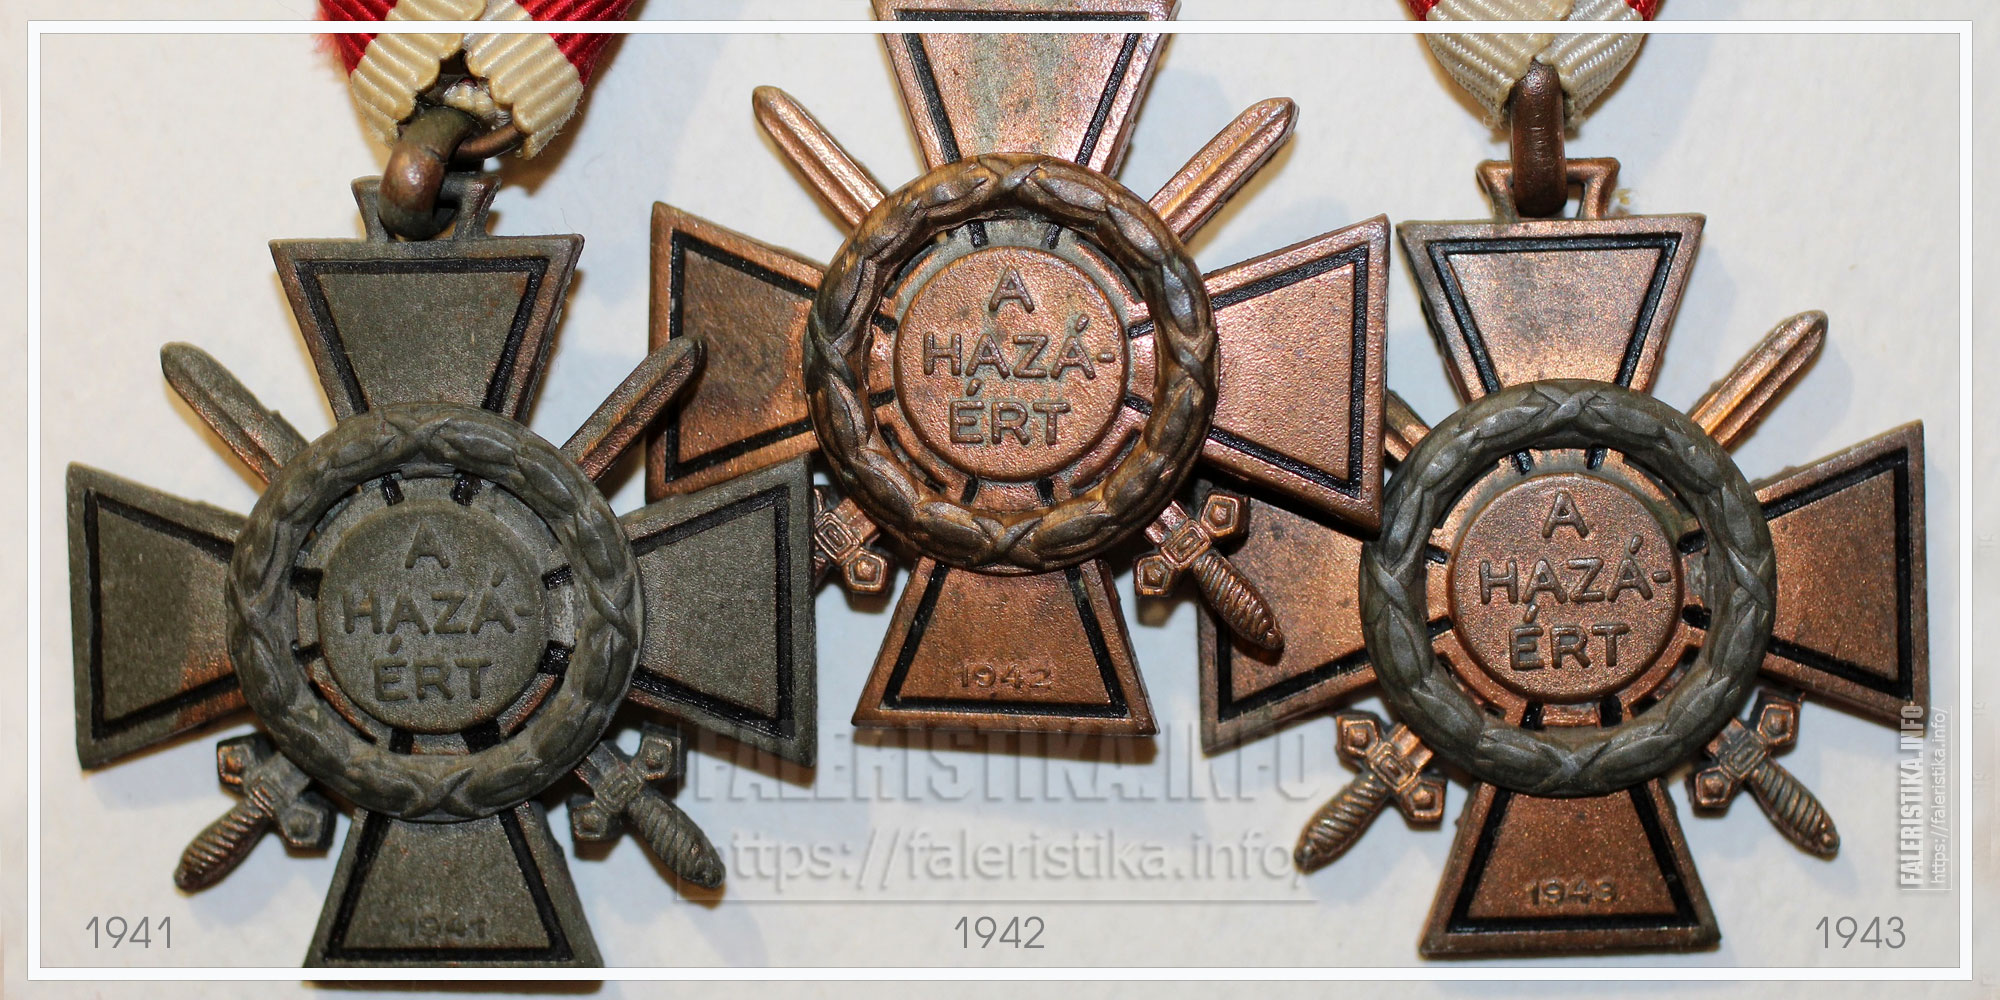 Огненный крест цветок. Огненный крест Венгрия. Огненный крест Венгрия 1941. Венгерский крест. Цветок Зорька Огненный крест.